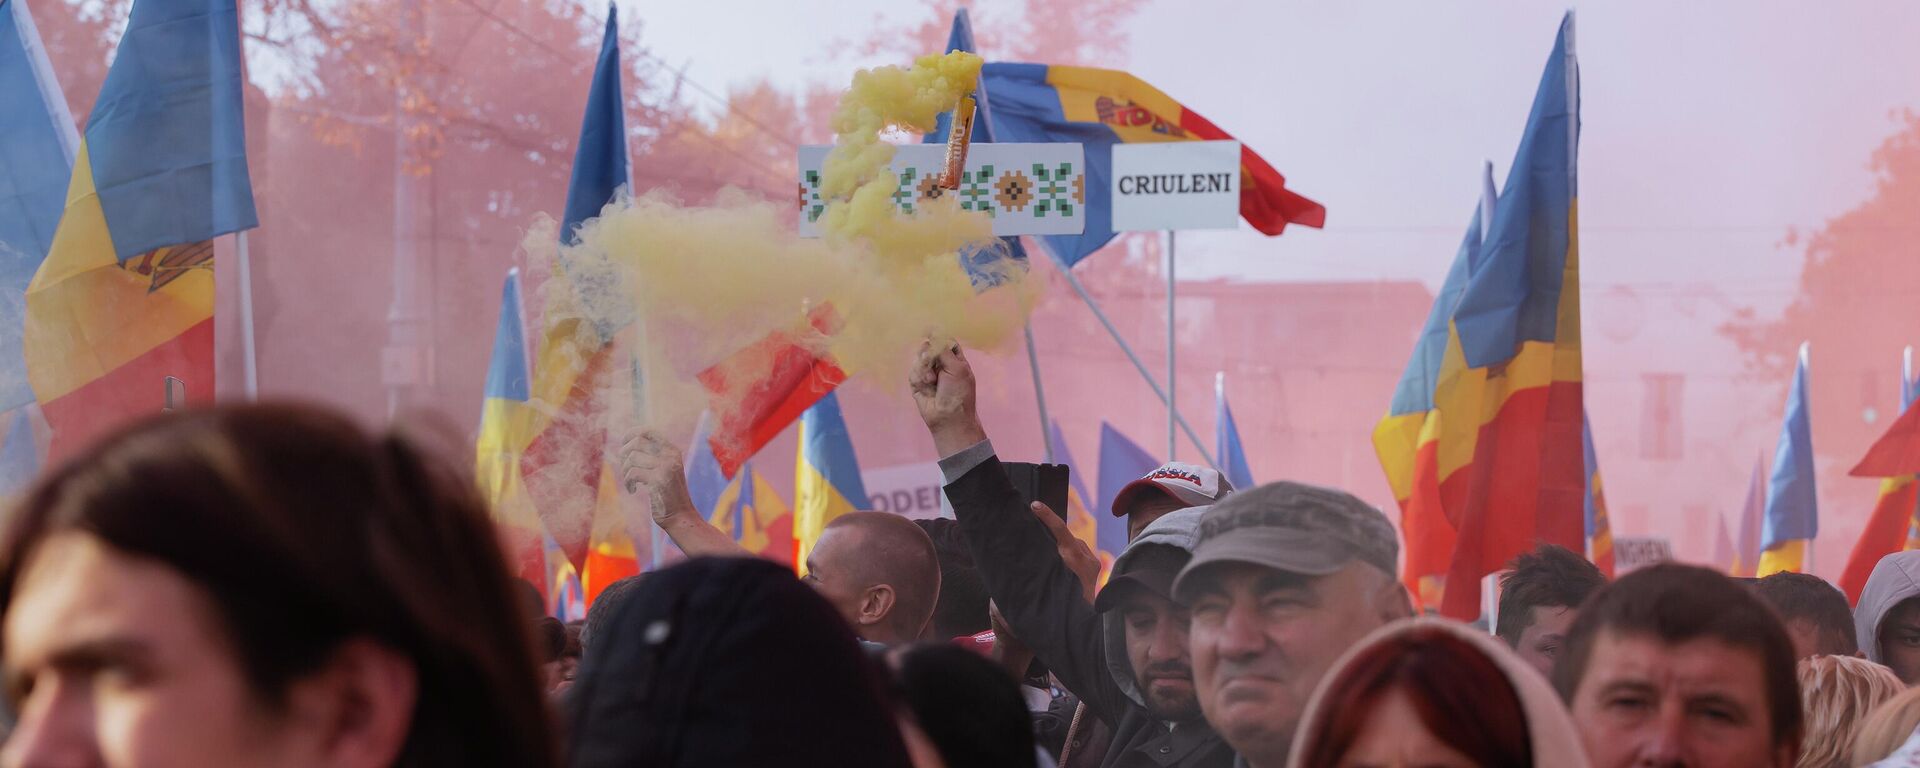 Акция протеста оппозиции в Кишиневе 16.10.2022 - Sputnik Молдова, 1920, 17.10.2022